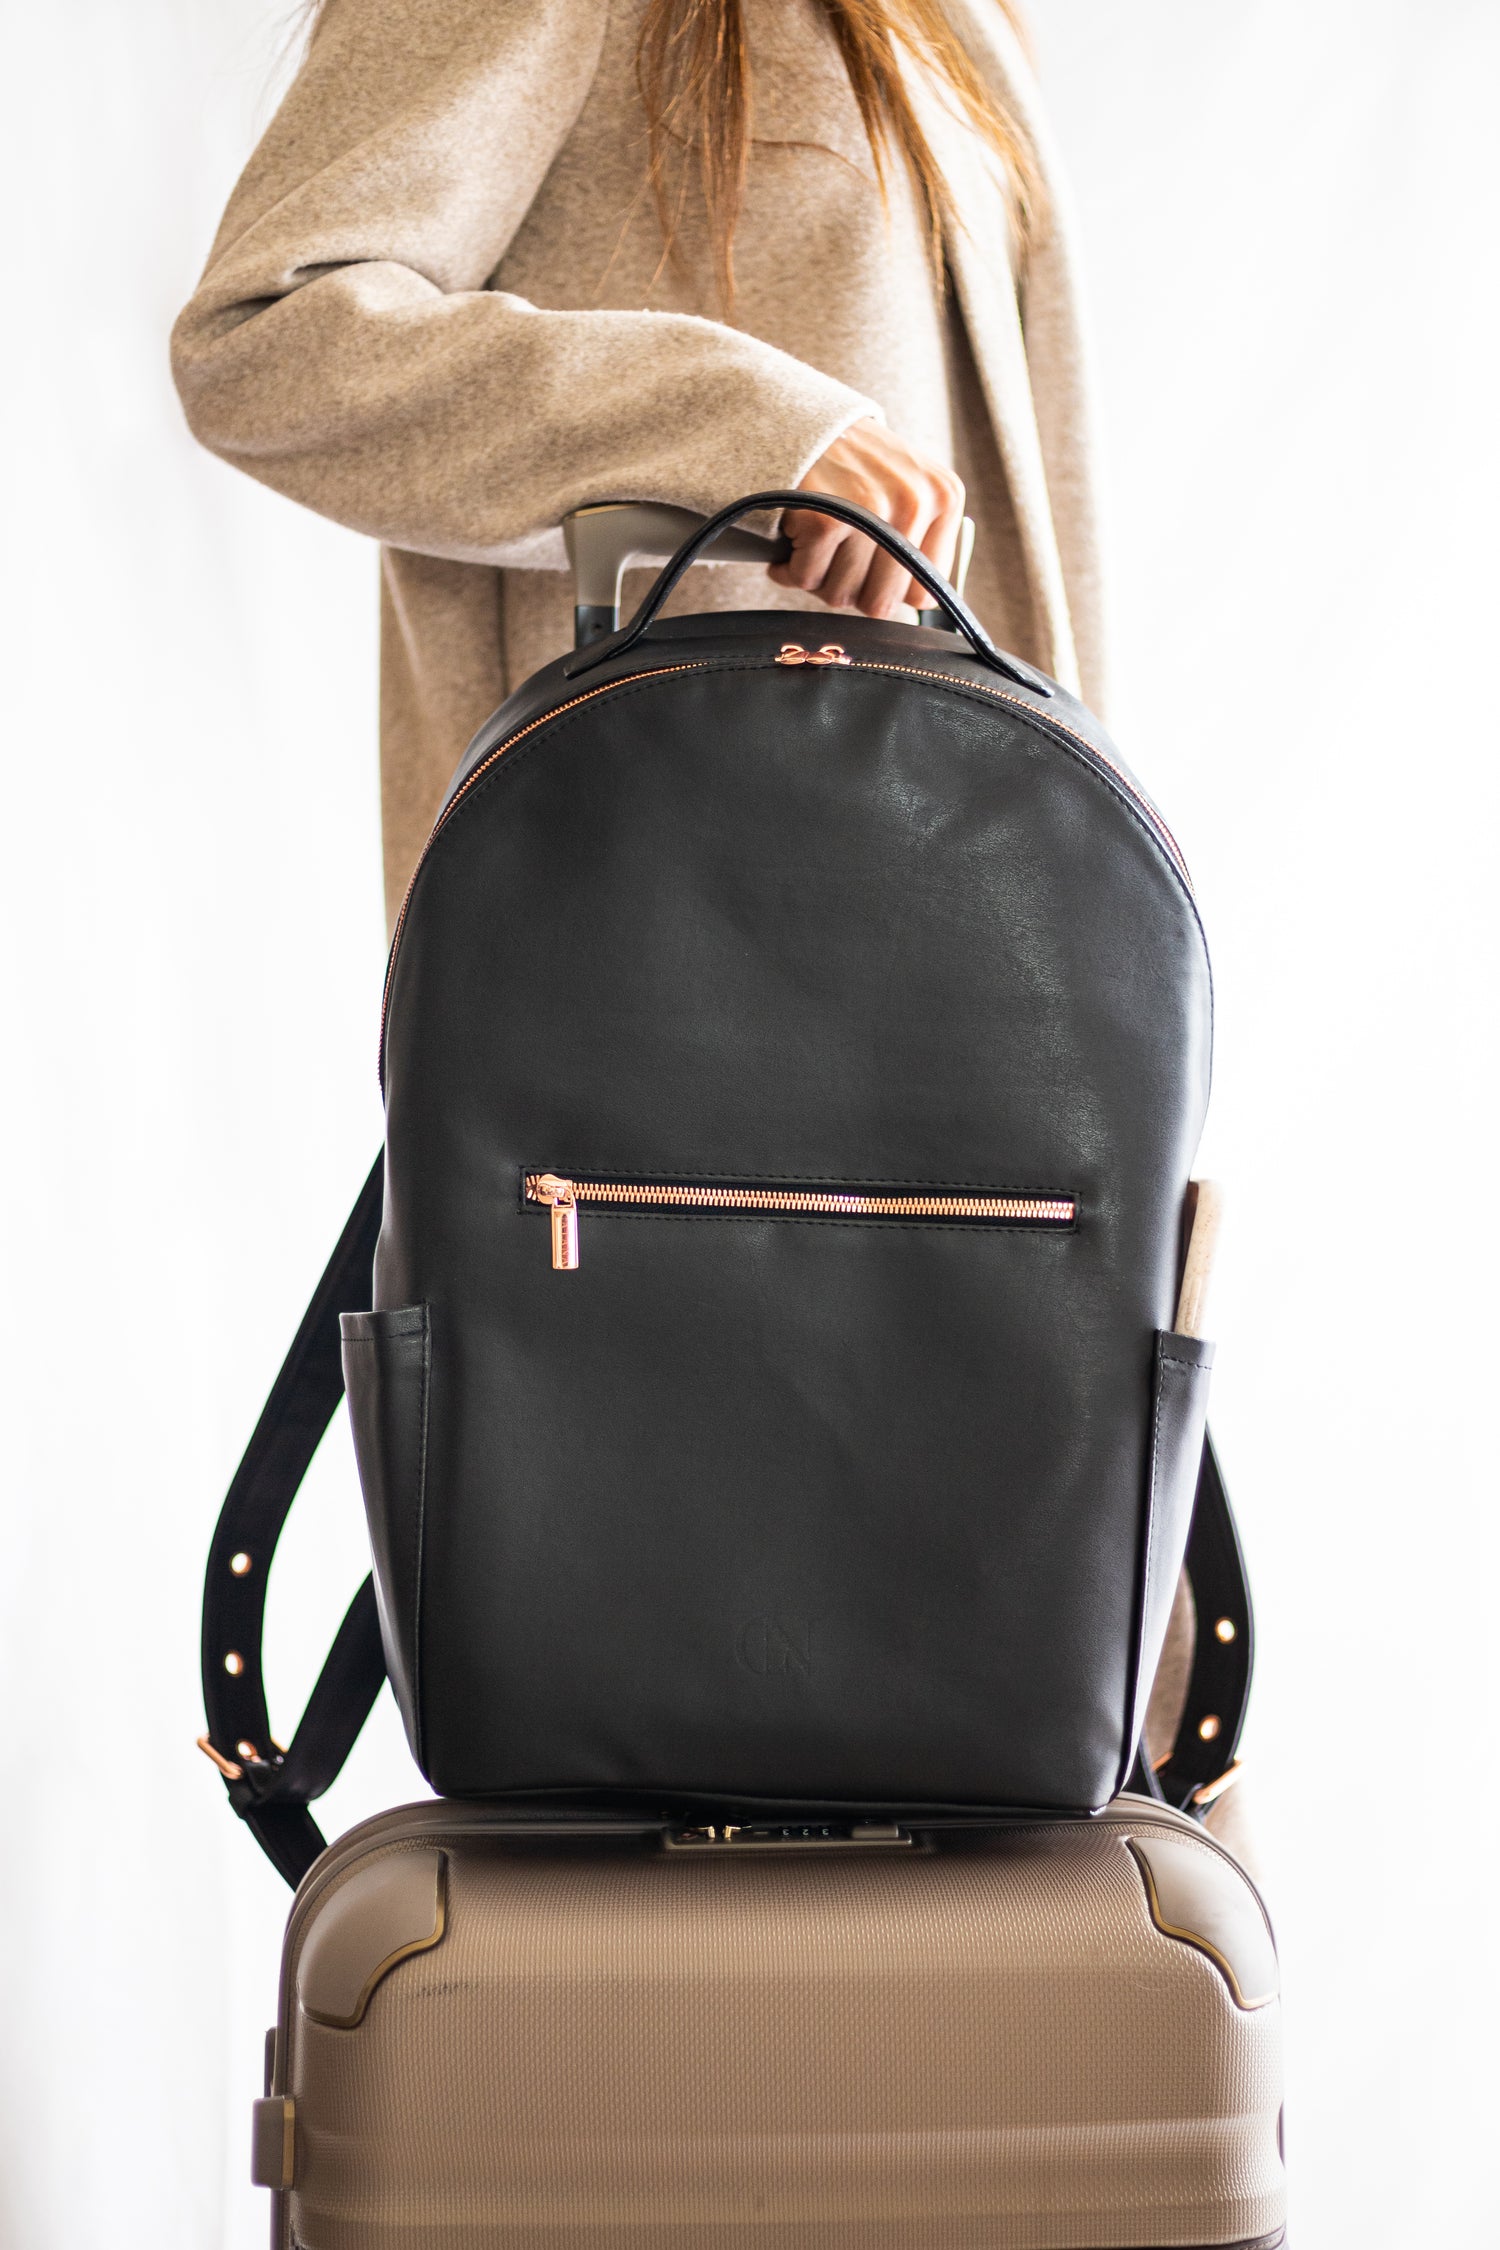 Catana Backpacks for Travelers